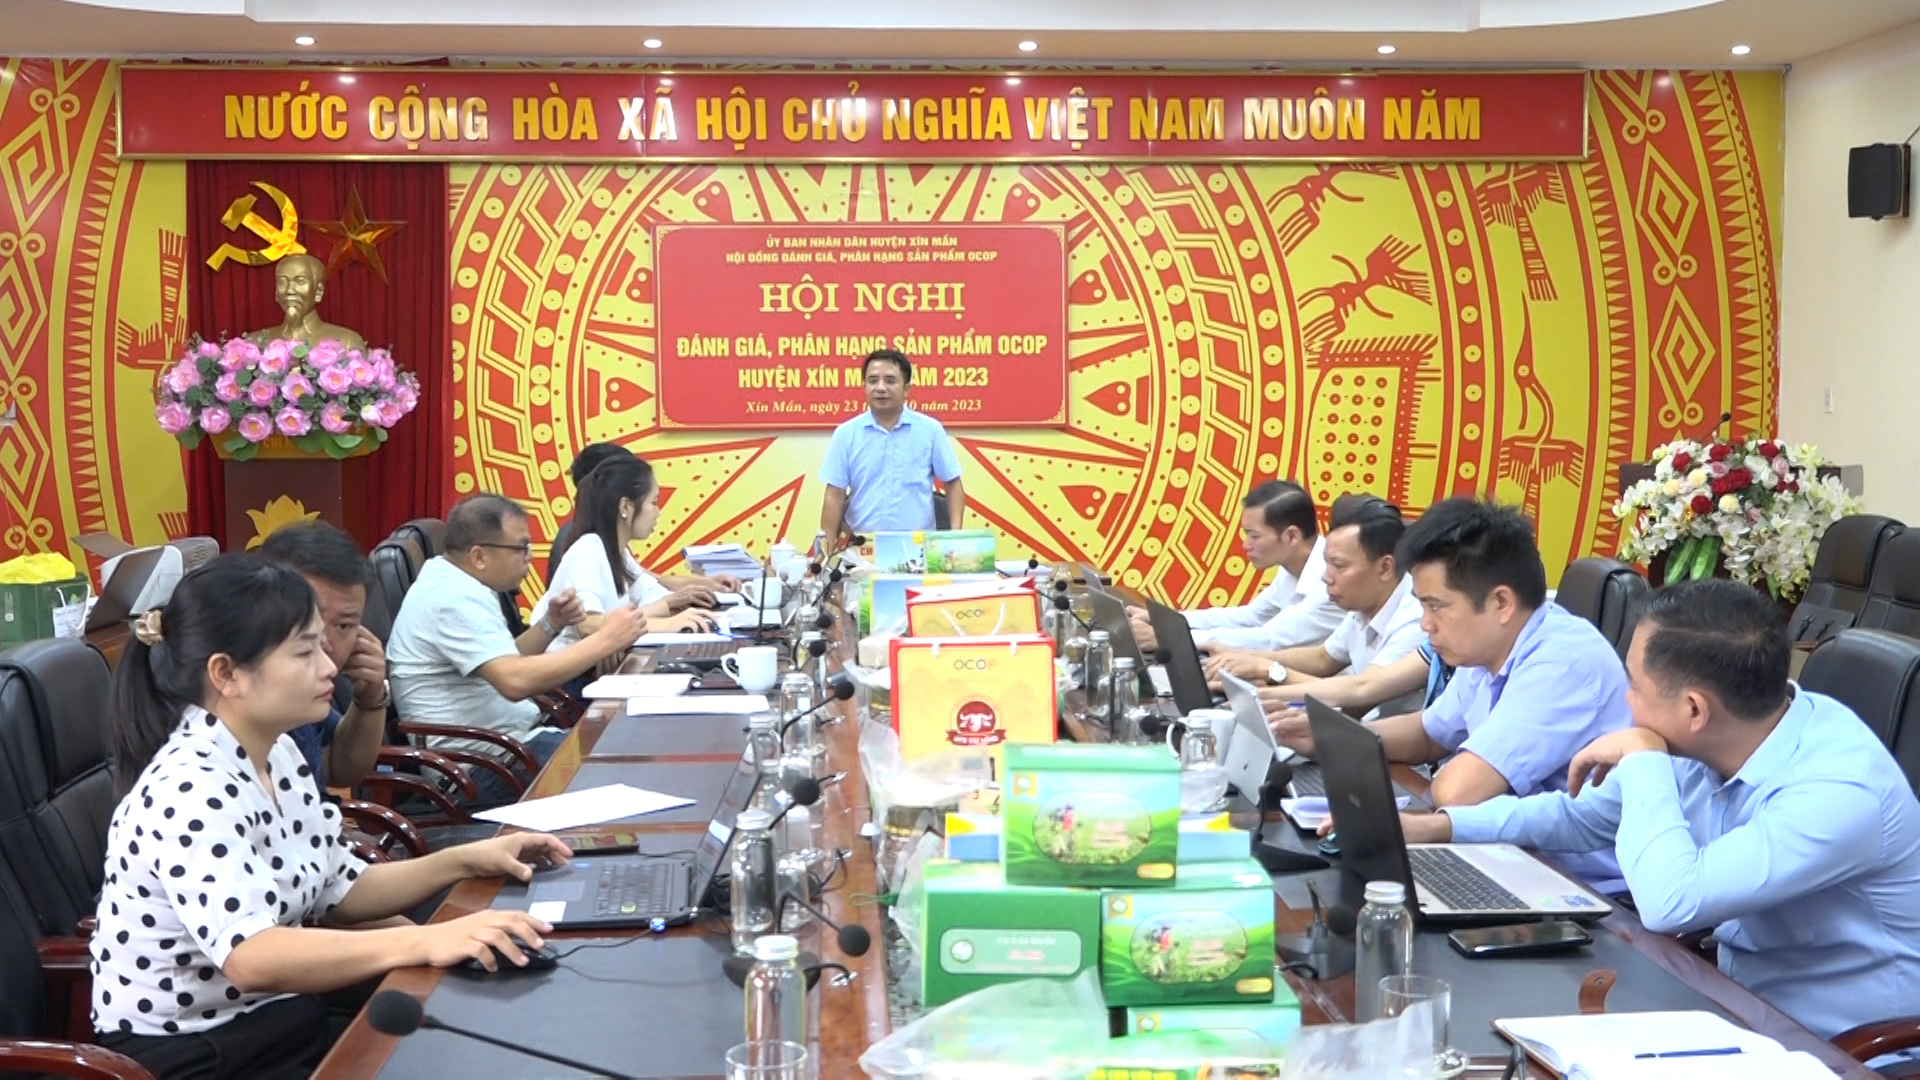 Hội nghị đánh giá, phân hạng sản phẩm OCOP huyện Xín Mần năm 2023